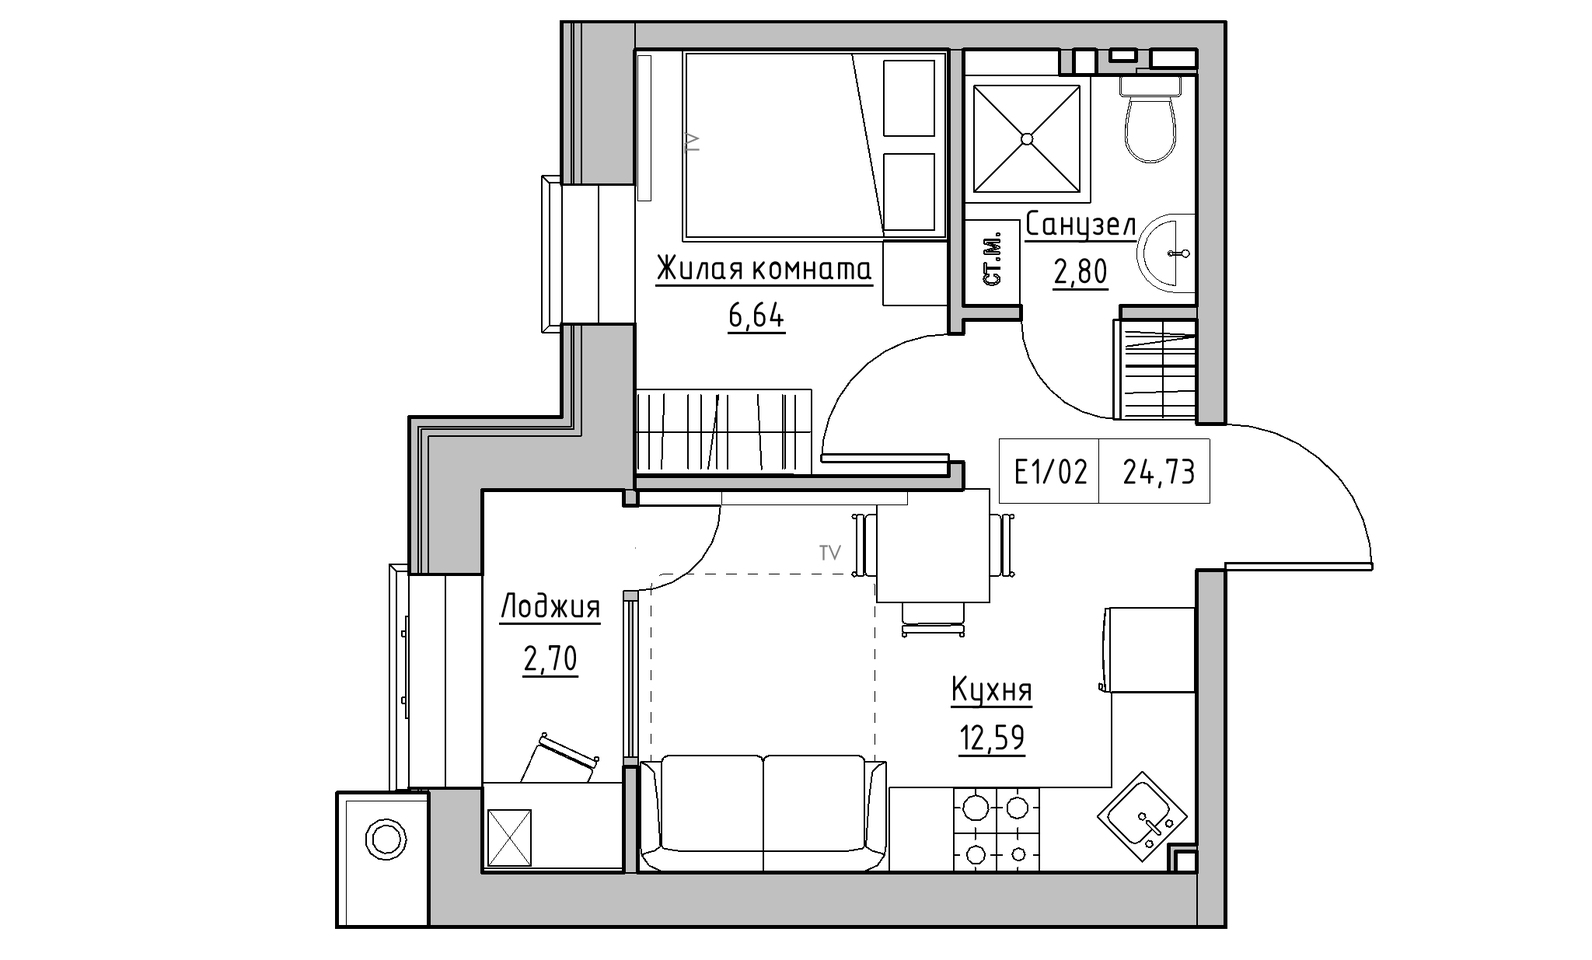 Планування 1-к квартира площею 24.73м2, KS-014-05/0016.